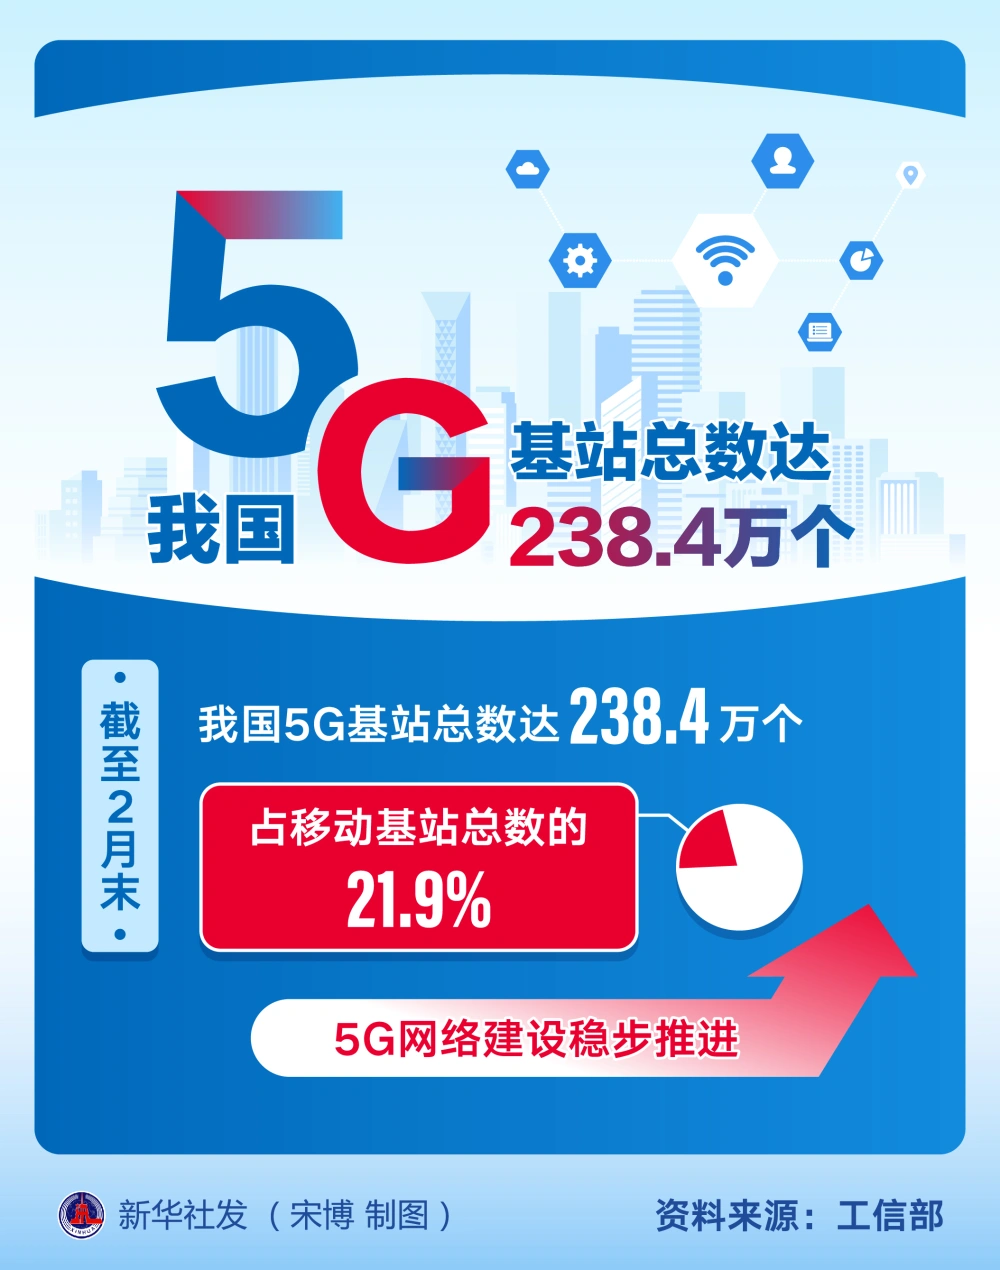 北京 5G 网络建设现状及体验：全面加速，覆盖范围稳步扩大